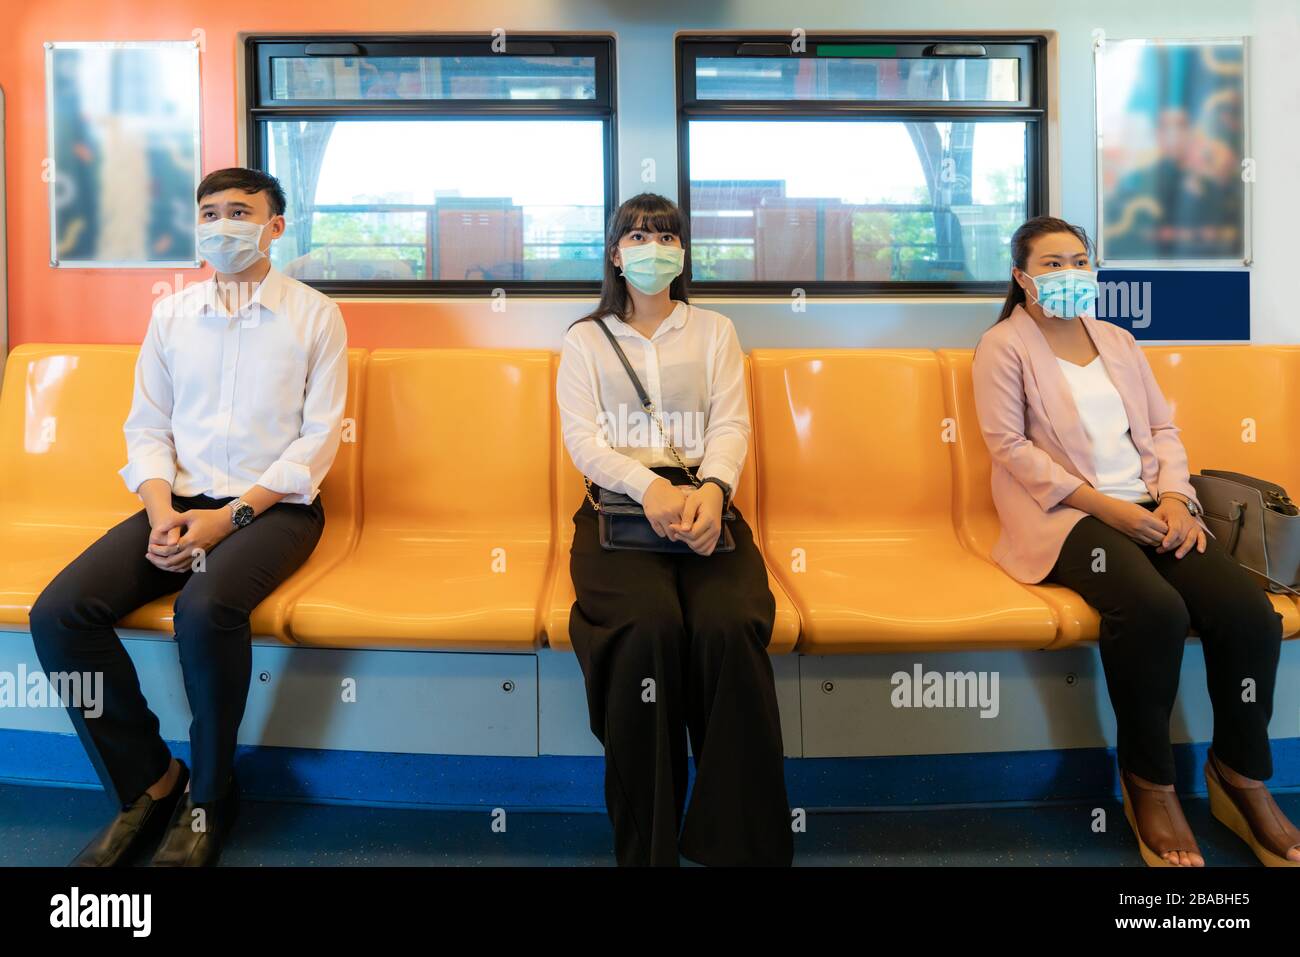 Trois personnes asiatiques portant un masque assis à une distance de métro pour un siège d'autres personnes gardent la distance de protection contre les virus COVID-19 et les personnes socia Banque D'Images